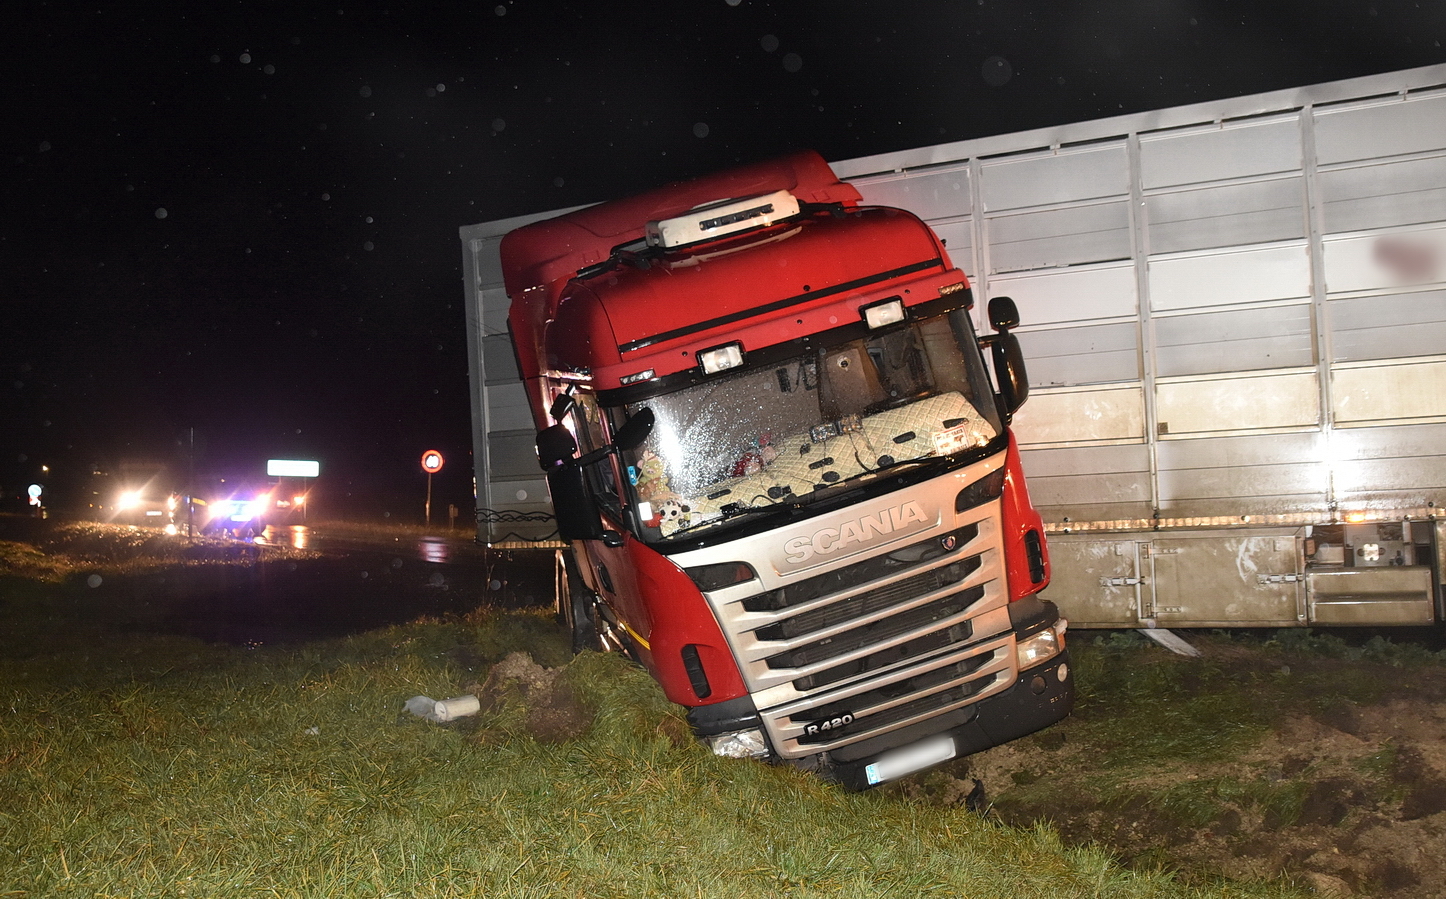 A Scania a decemberi balesetben - a sofőr szerint vad miatt került árokba